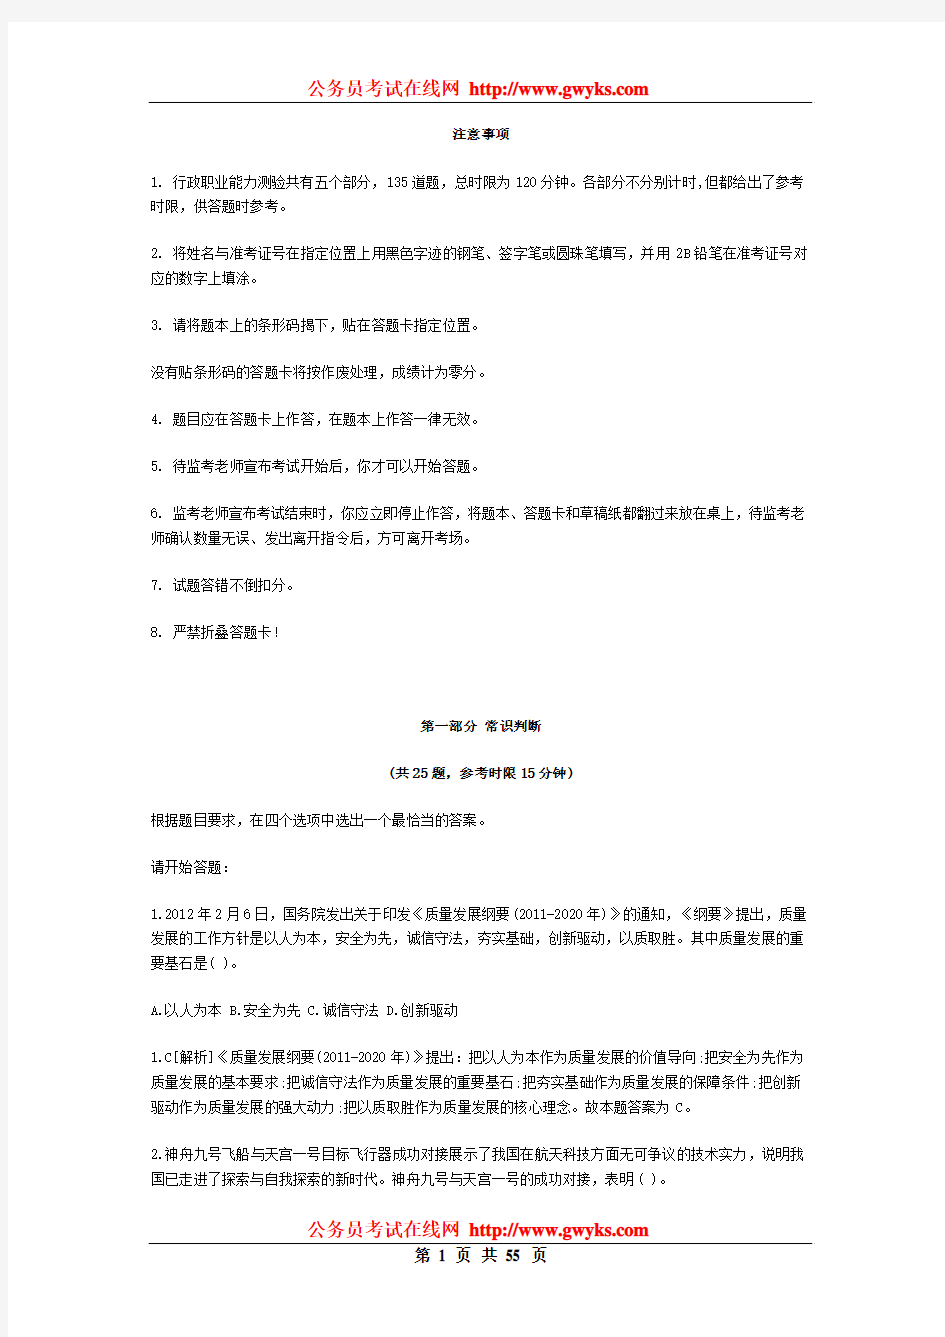   2008年天津公务员考试行测真题及答案解析